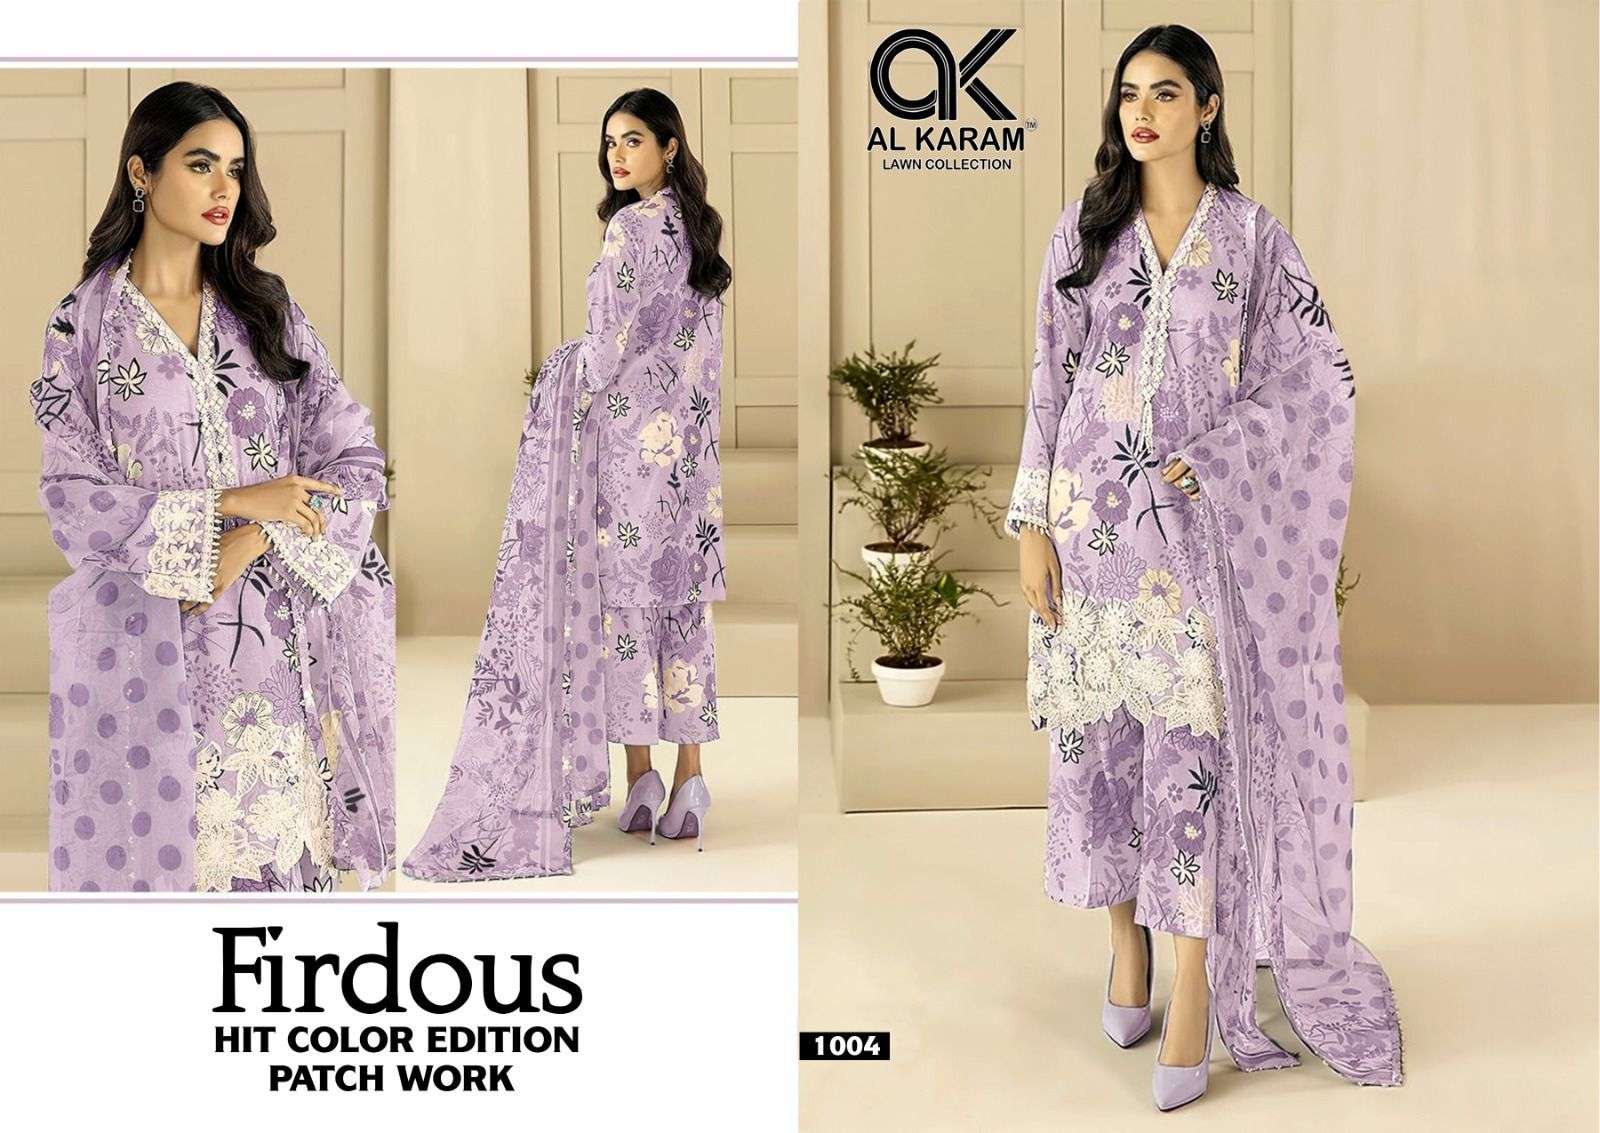 Al karam firdous hit colour edition 1001-1004 series pakistani wear cotton suits collection wholesale surat